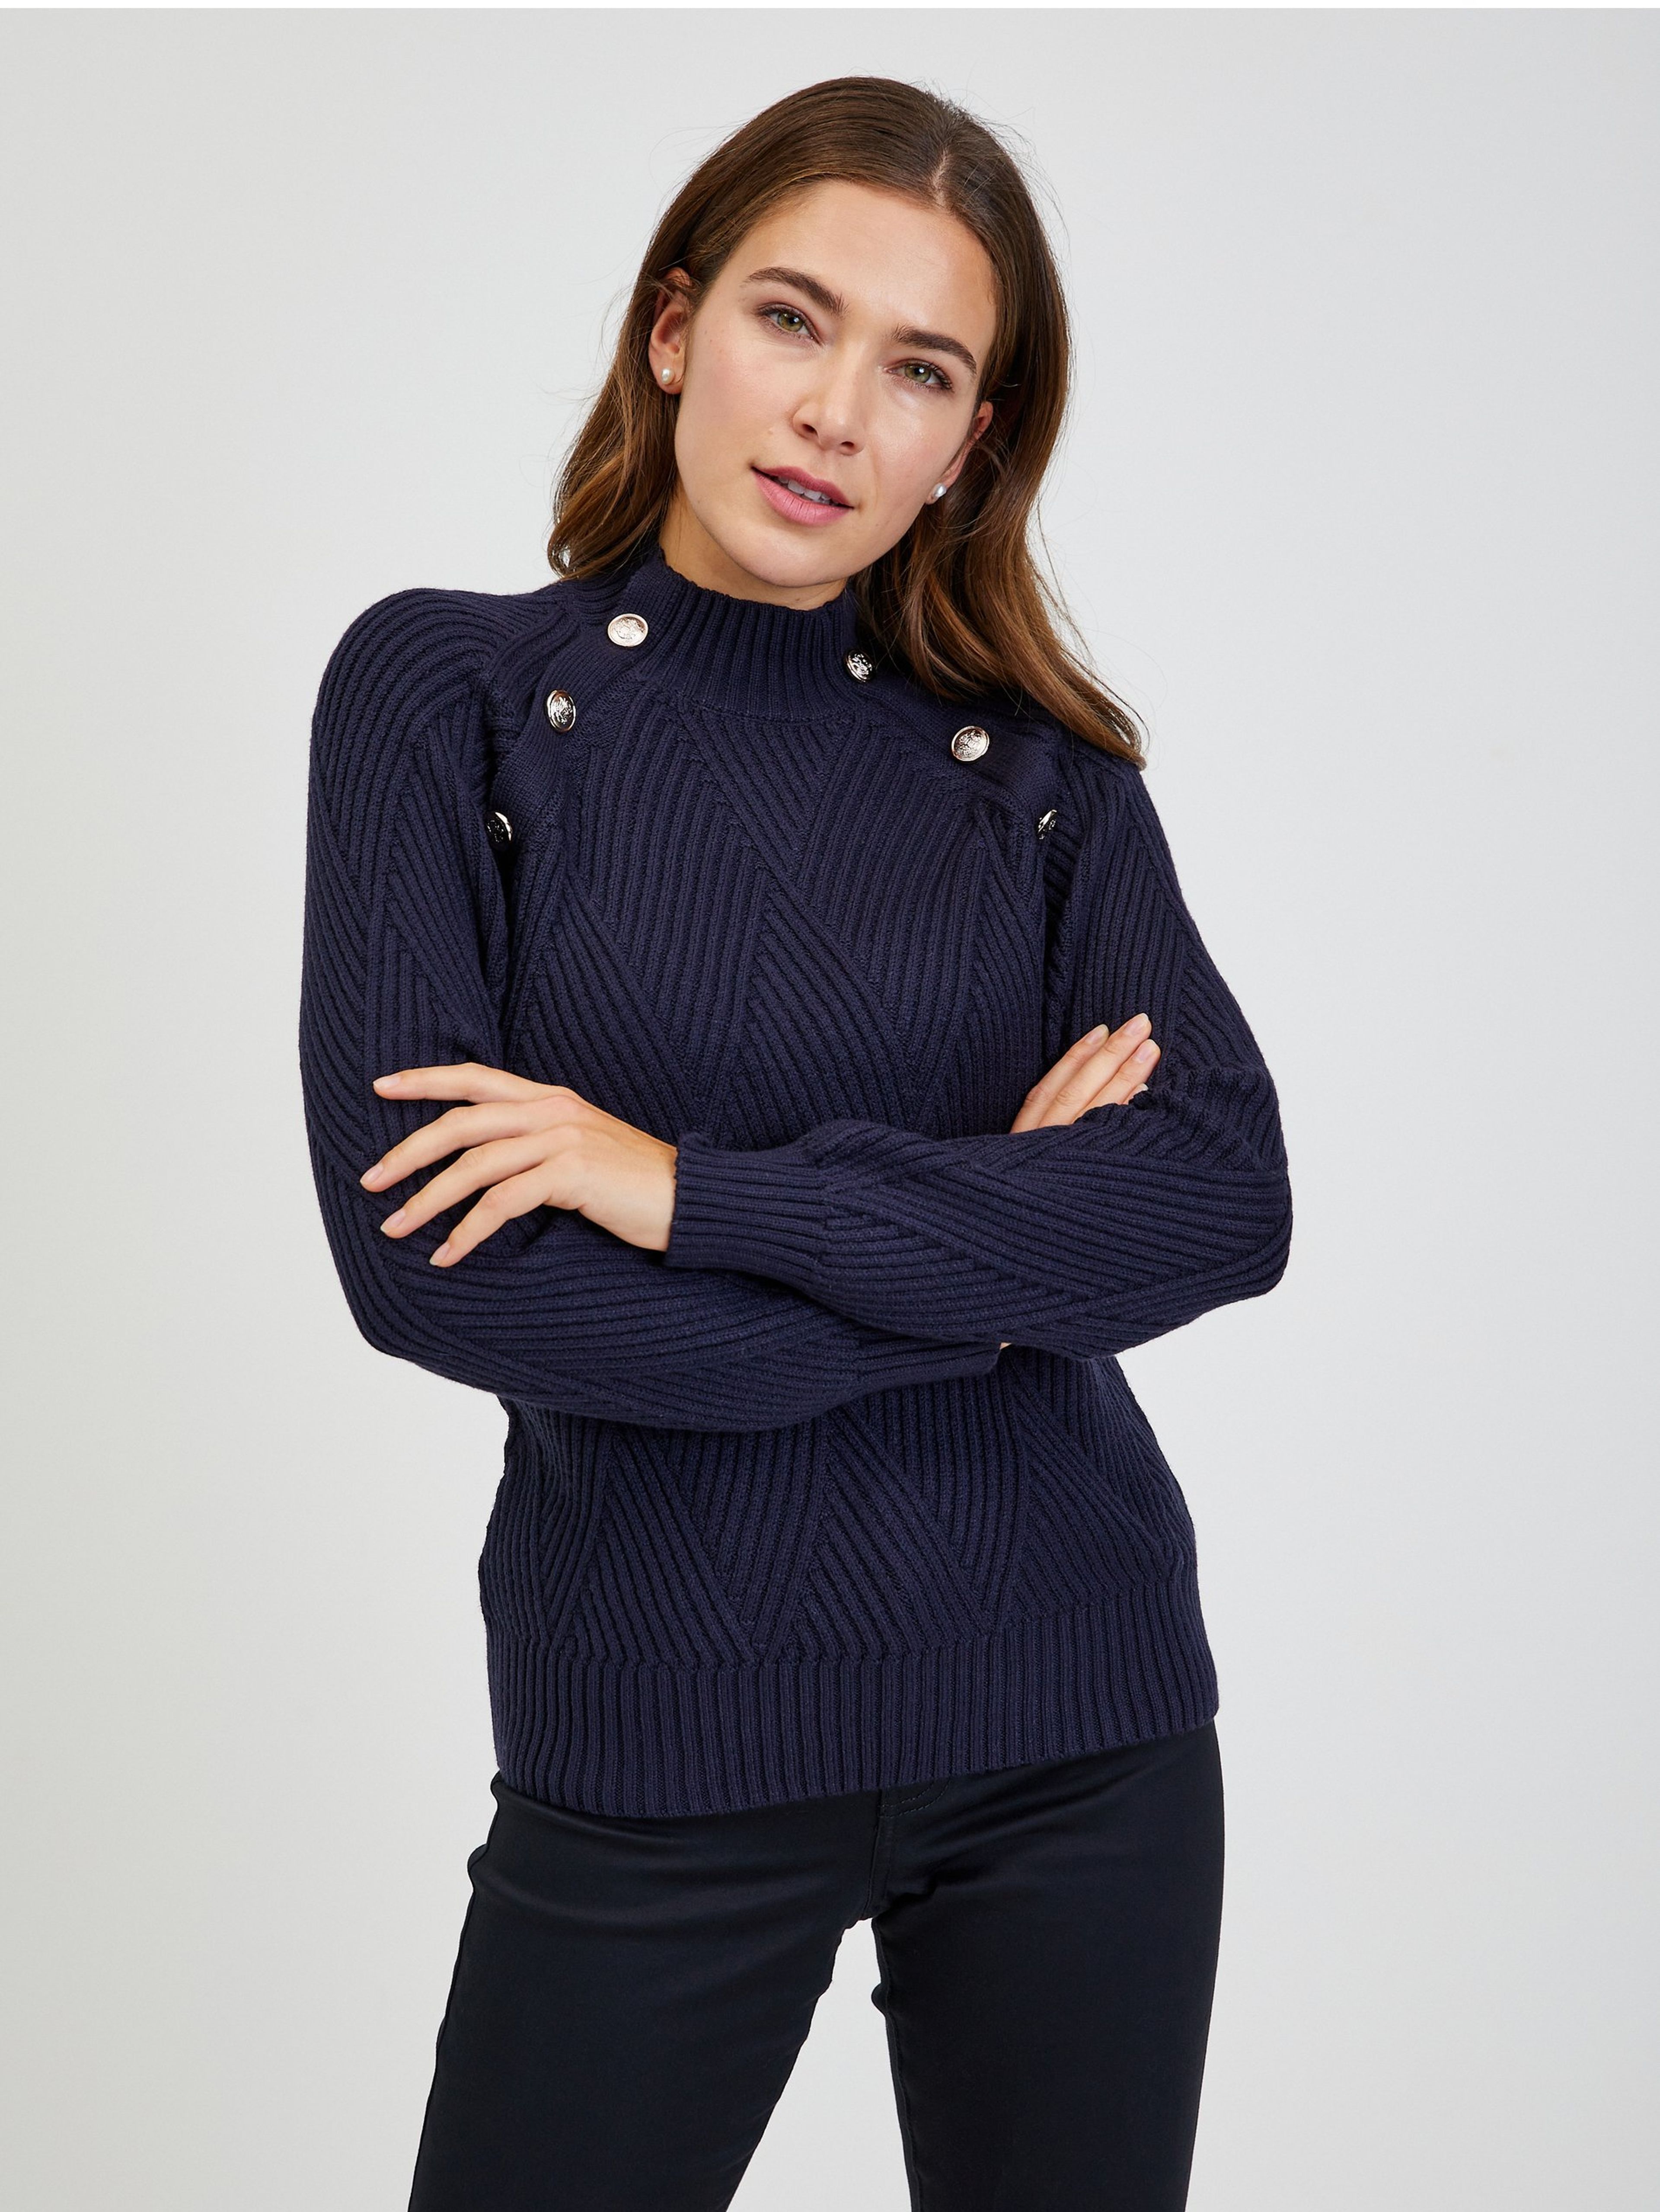 Tmavě modrý dámský žebrovaný svetr s ozdobnými knoflíky ORSAY